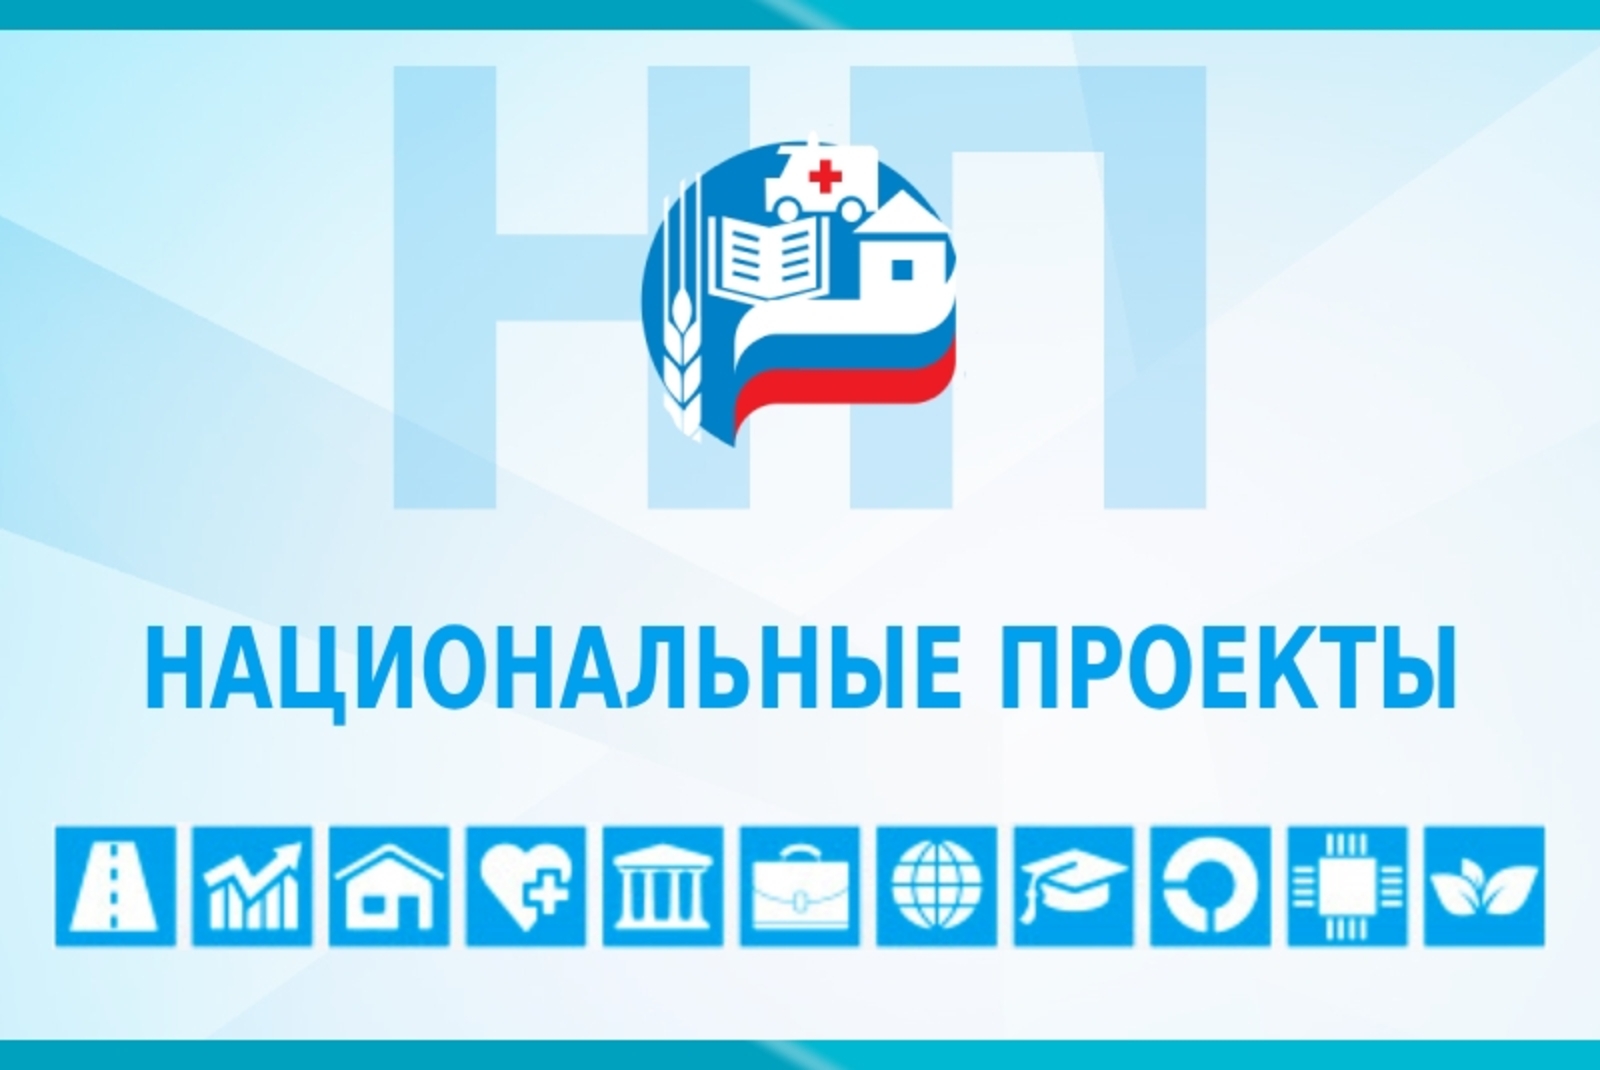 Башкортостан сформирует машиностроительный образовательный центр в рамках стратегической инициативы «Профессионалитет»